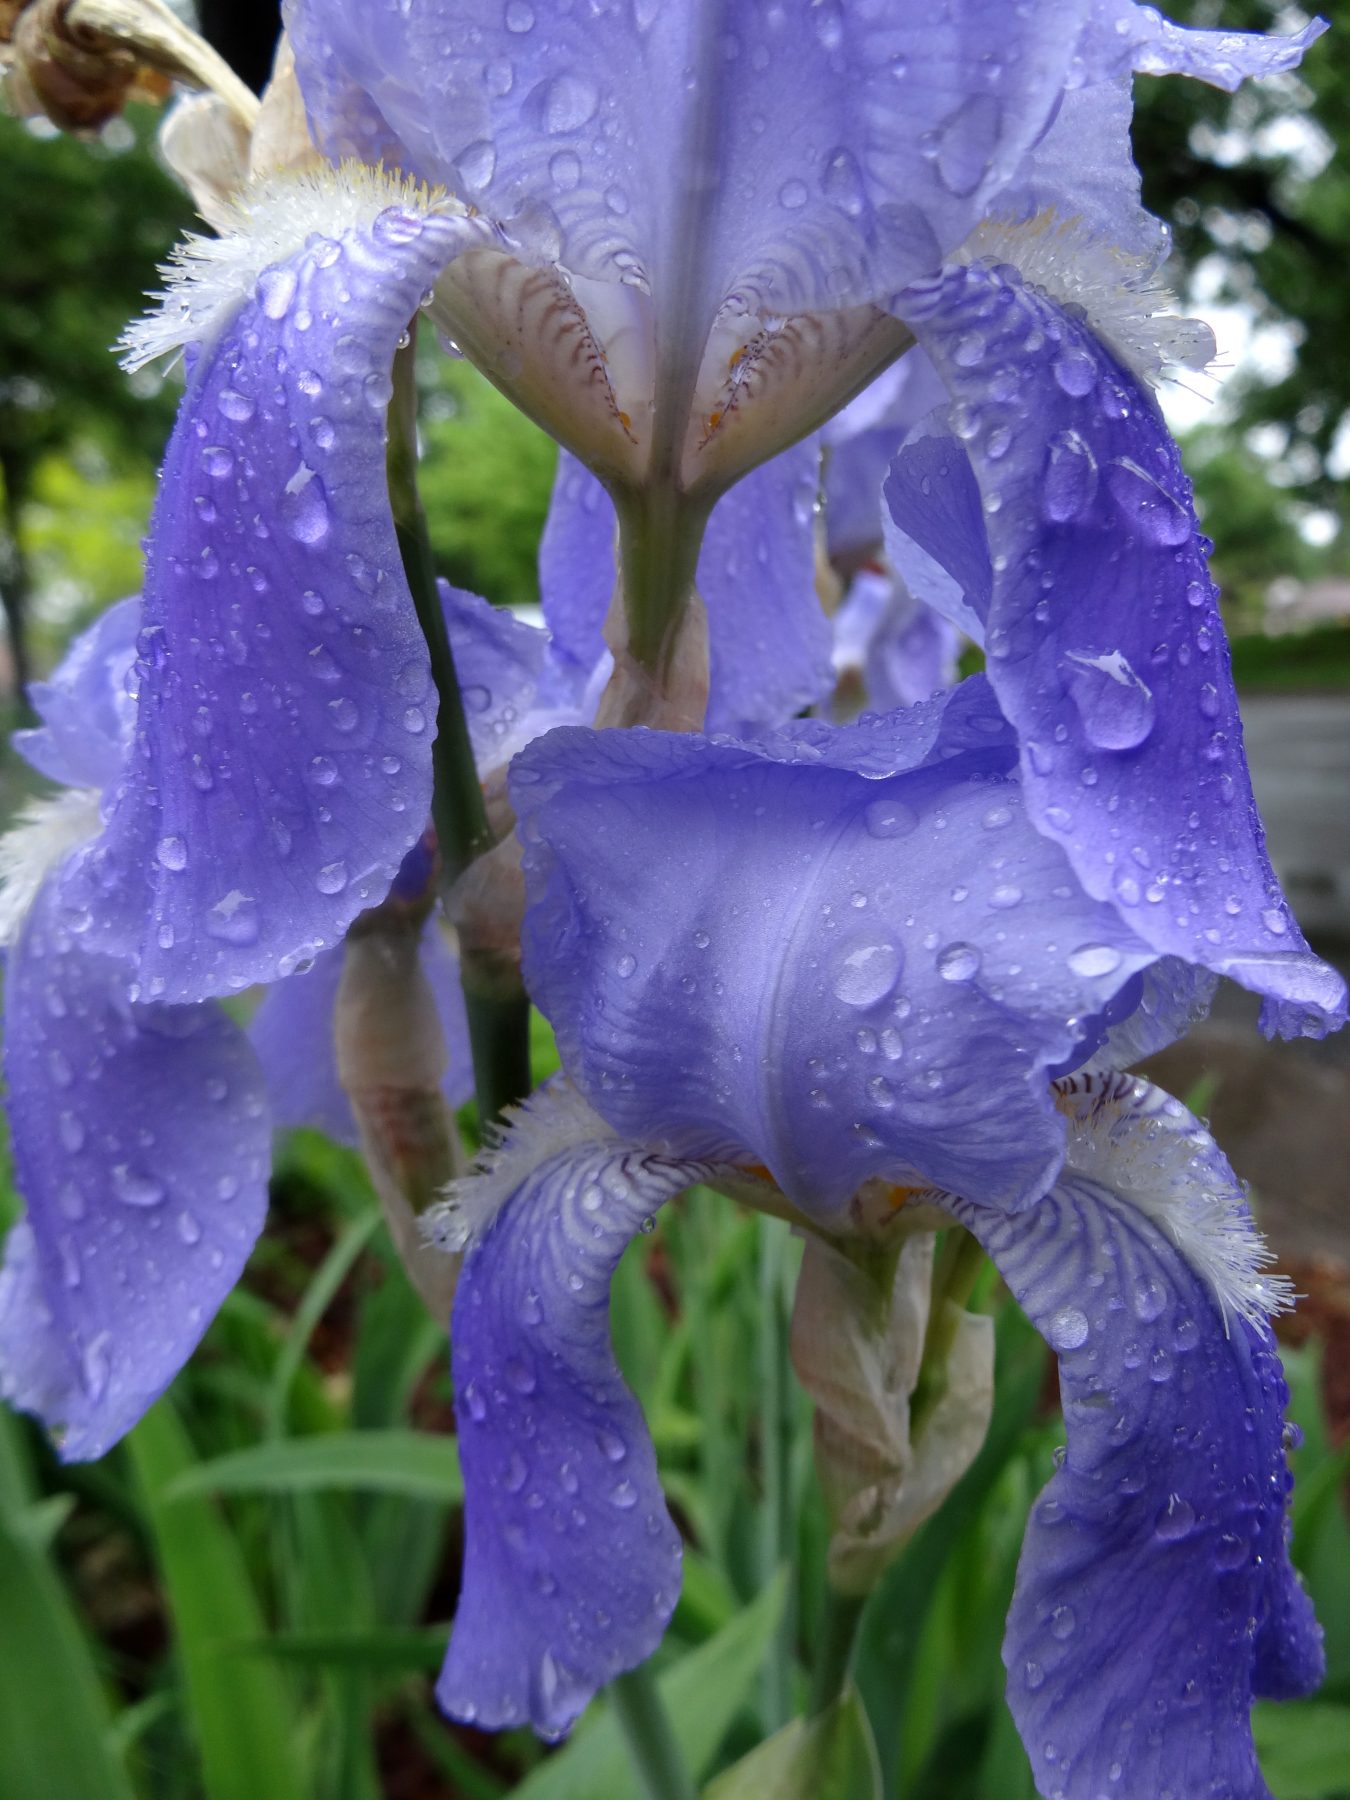 Raindrops on Iris's